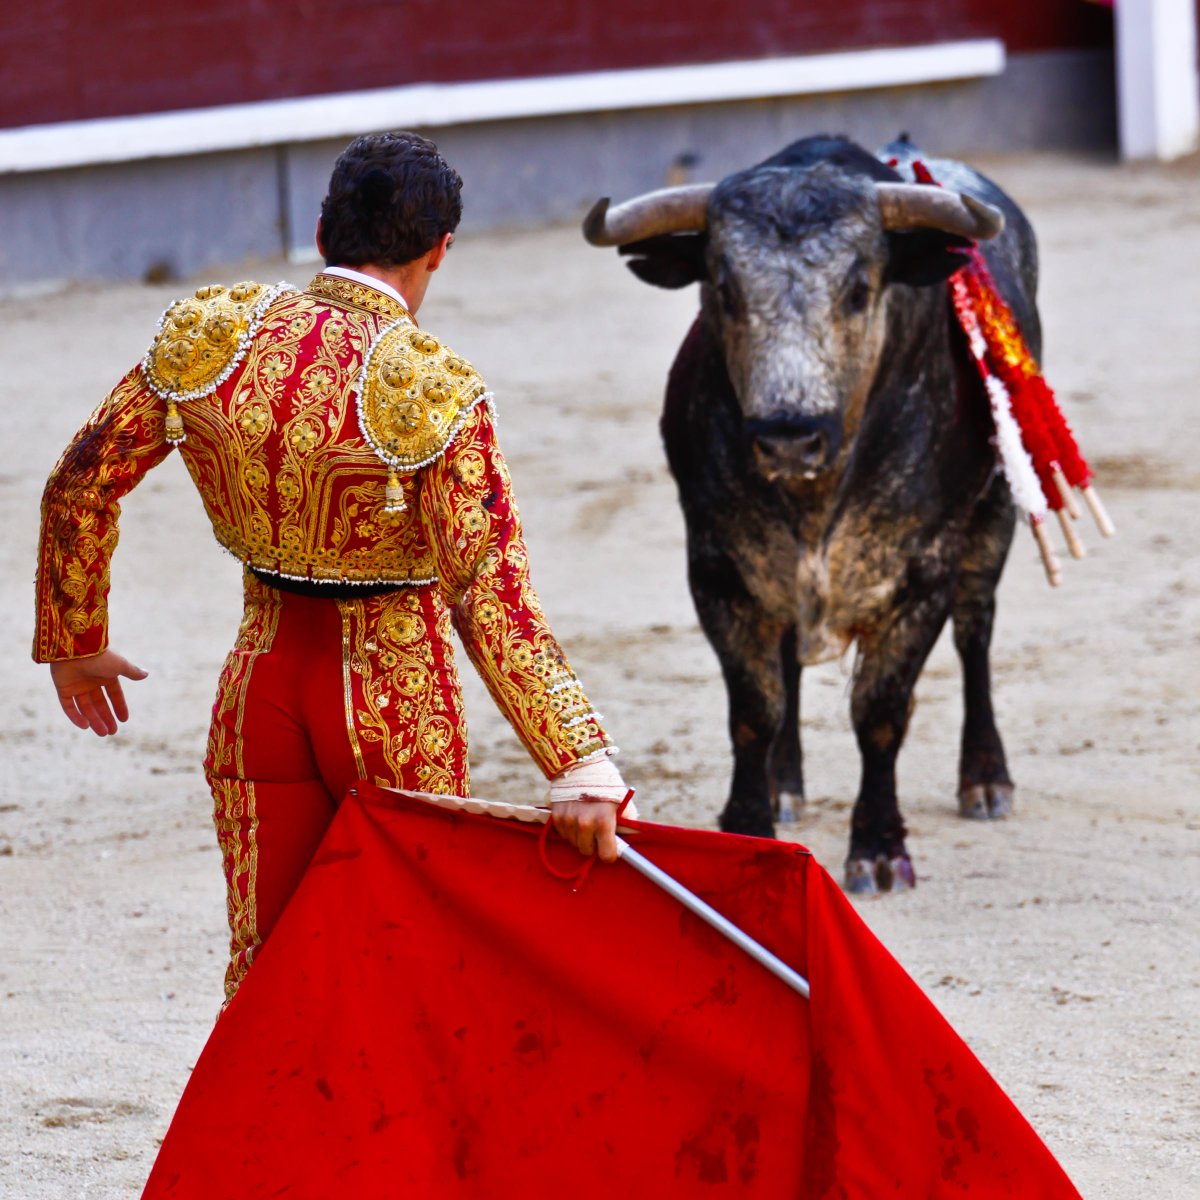 公式 旅らびcom 世界の絶景まとめ على تويتر 闘牛士の衣装 の詳細情報 国 スペイン 民族衣装の詳細 スペインの男性闘牛士の衣装で チャレーコ というベスト シャキーラ という上着がある 鮮やかな色合いとぴったりとしたズボンが特徴 トレロと